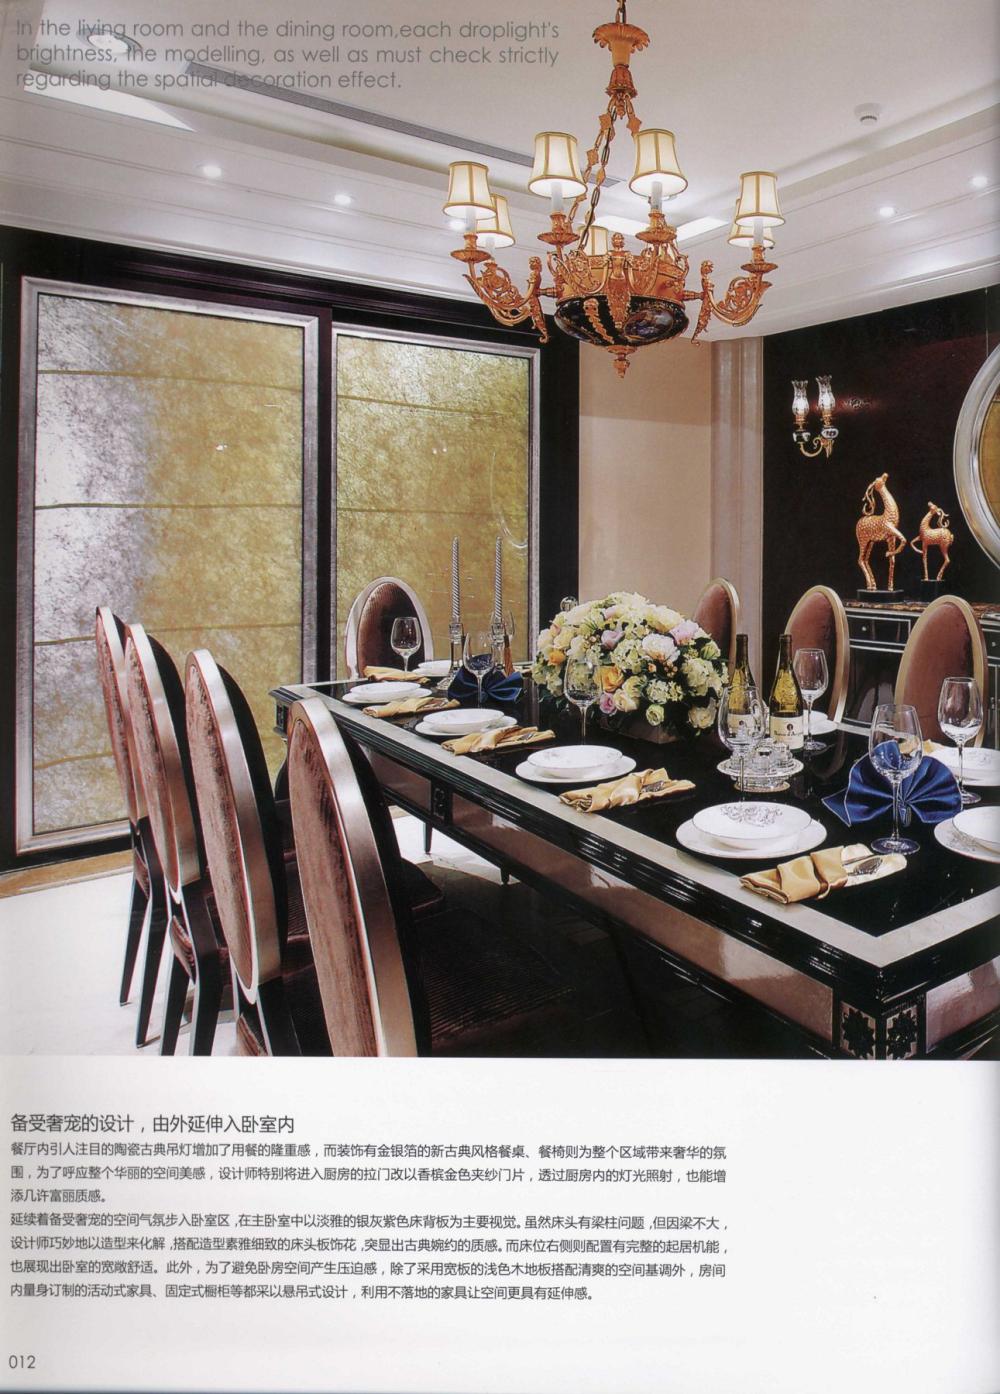 25 台湾名门府邸 taiwans luxury mansion_13671144854 0012.jpg